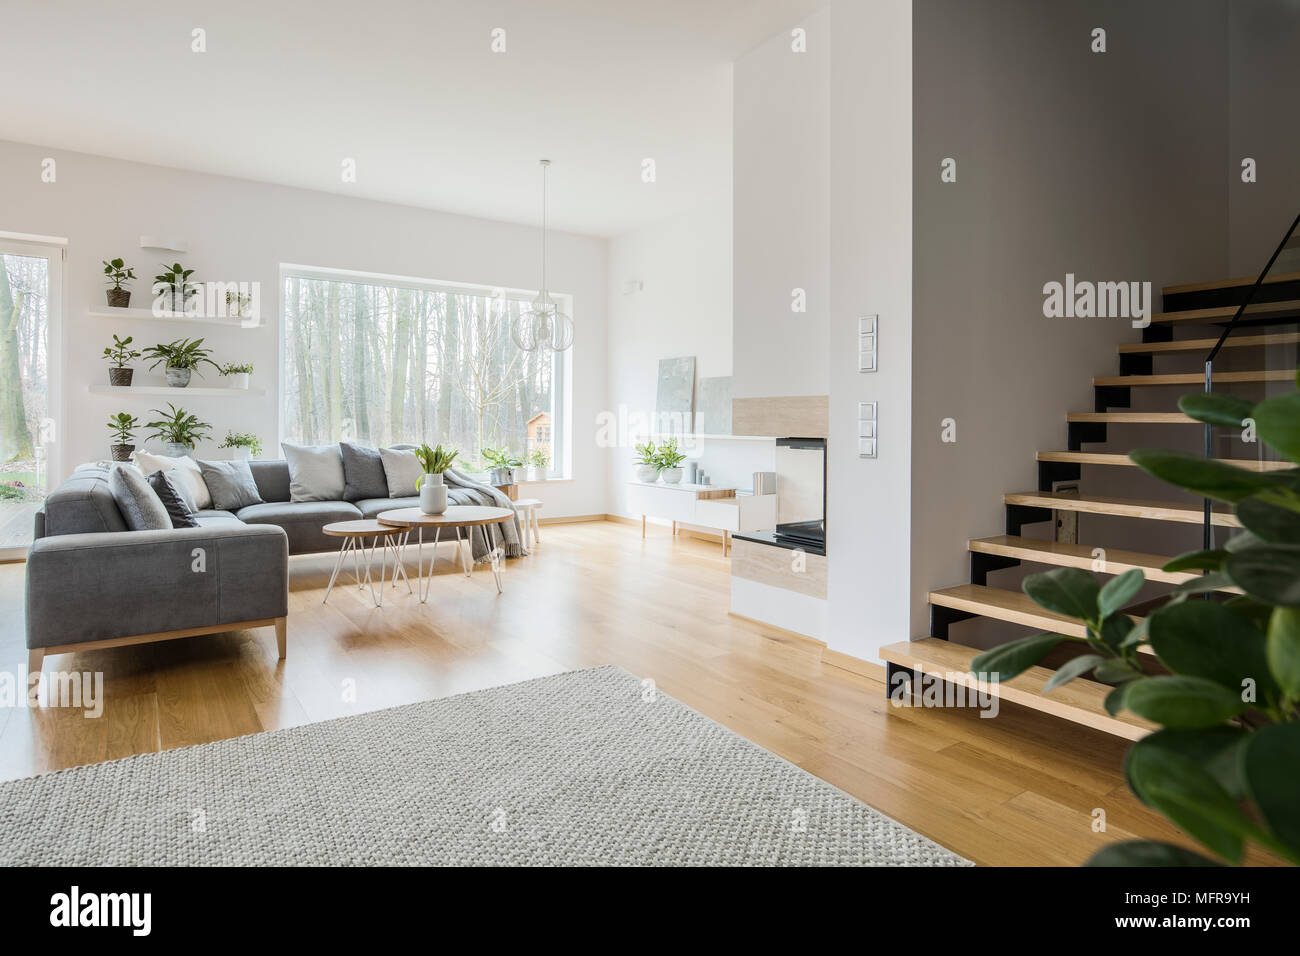 White salotto interno con angolo grigio lettino, fresche piante verdi, tappeti sui pavimenti e scale in legno Foto Stock